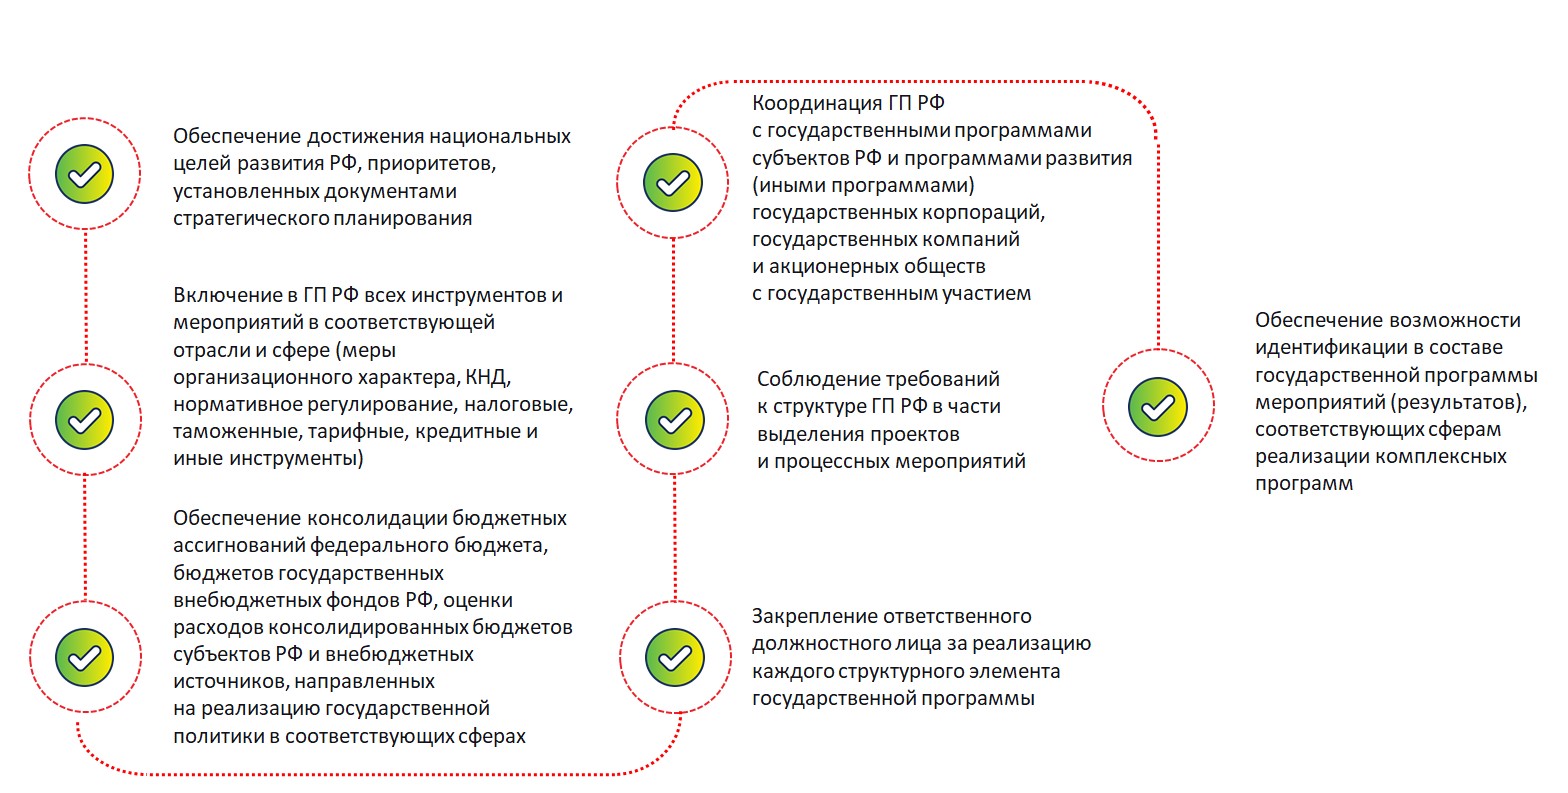 О новой системе управления государственными программами Российской Федерации (ч.1)